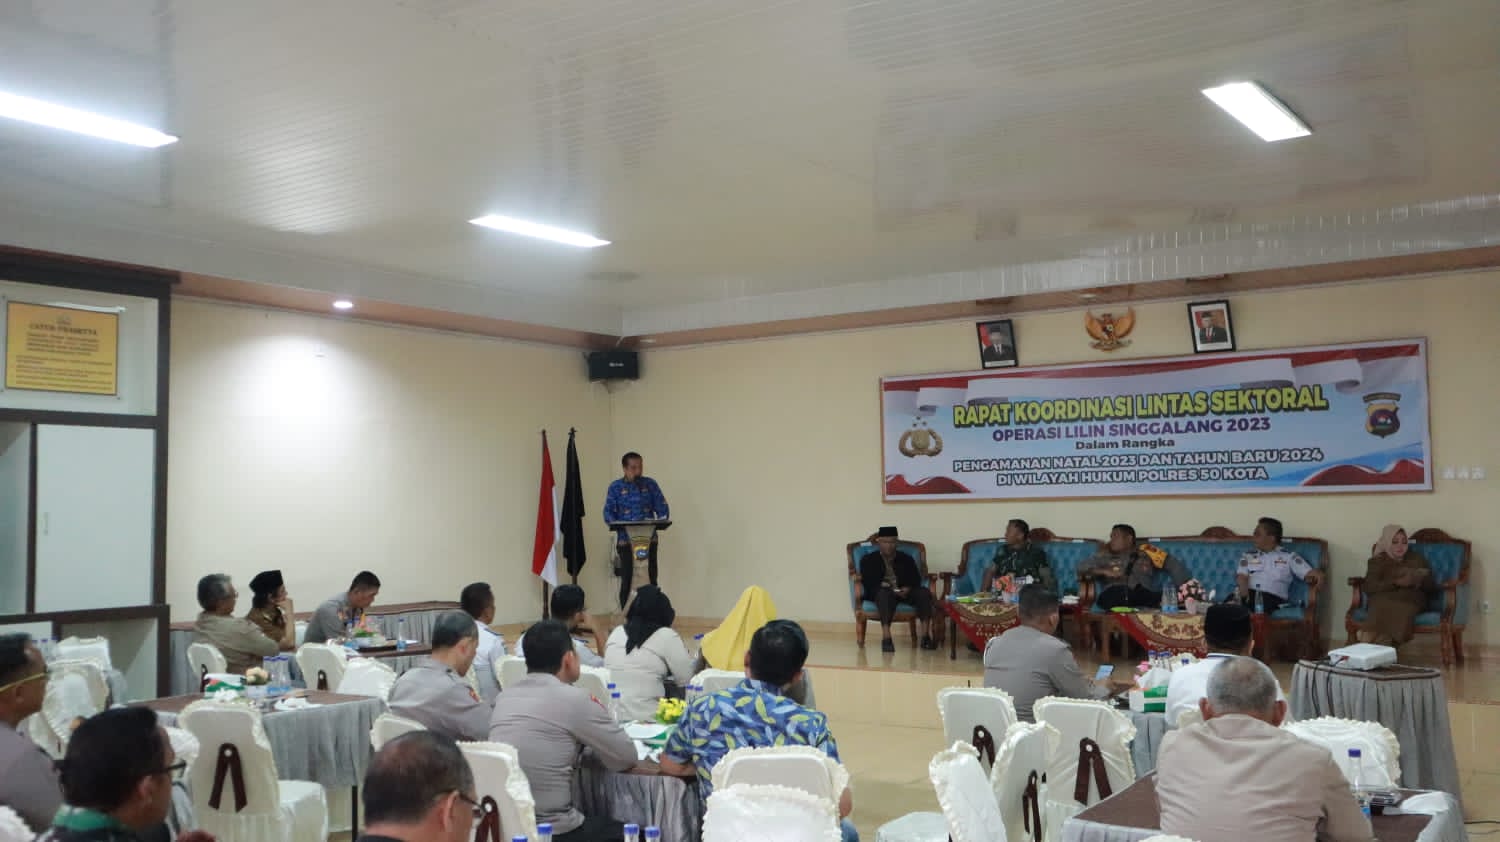 Polres 50 Kota Gelar Rapat Koordinasi Lintas Sektoral Dalam Rangka Operasi Lilin Singgalang 2023